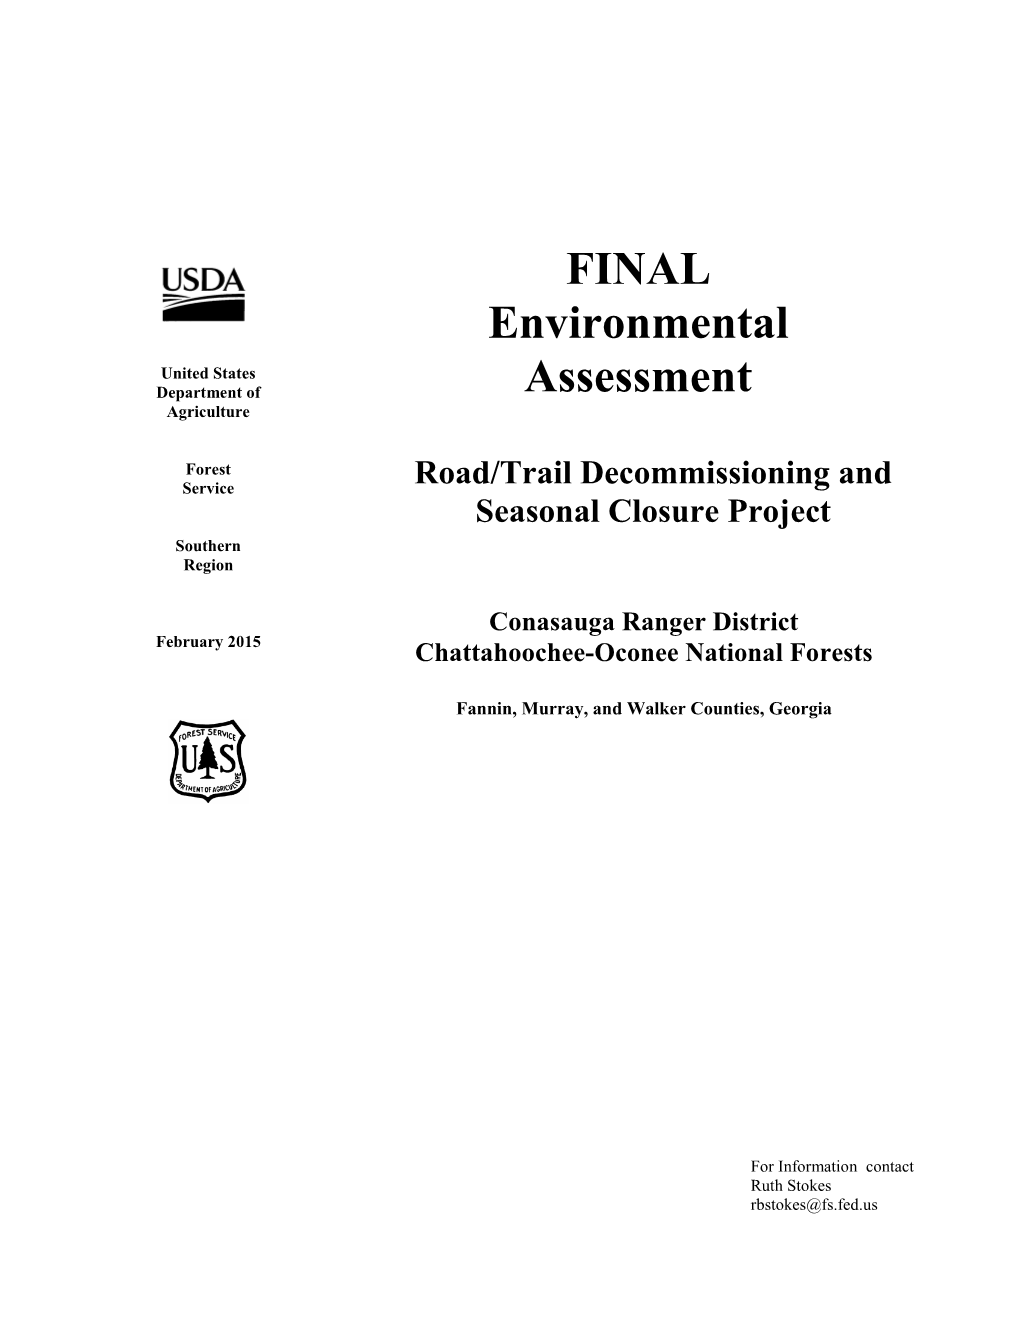 FINAL Environmental Assessment